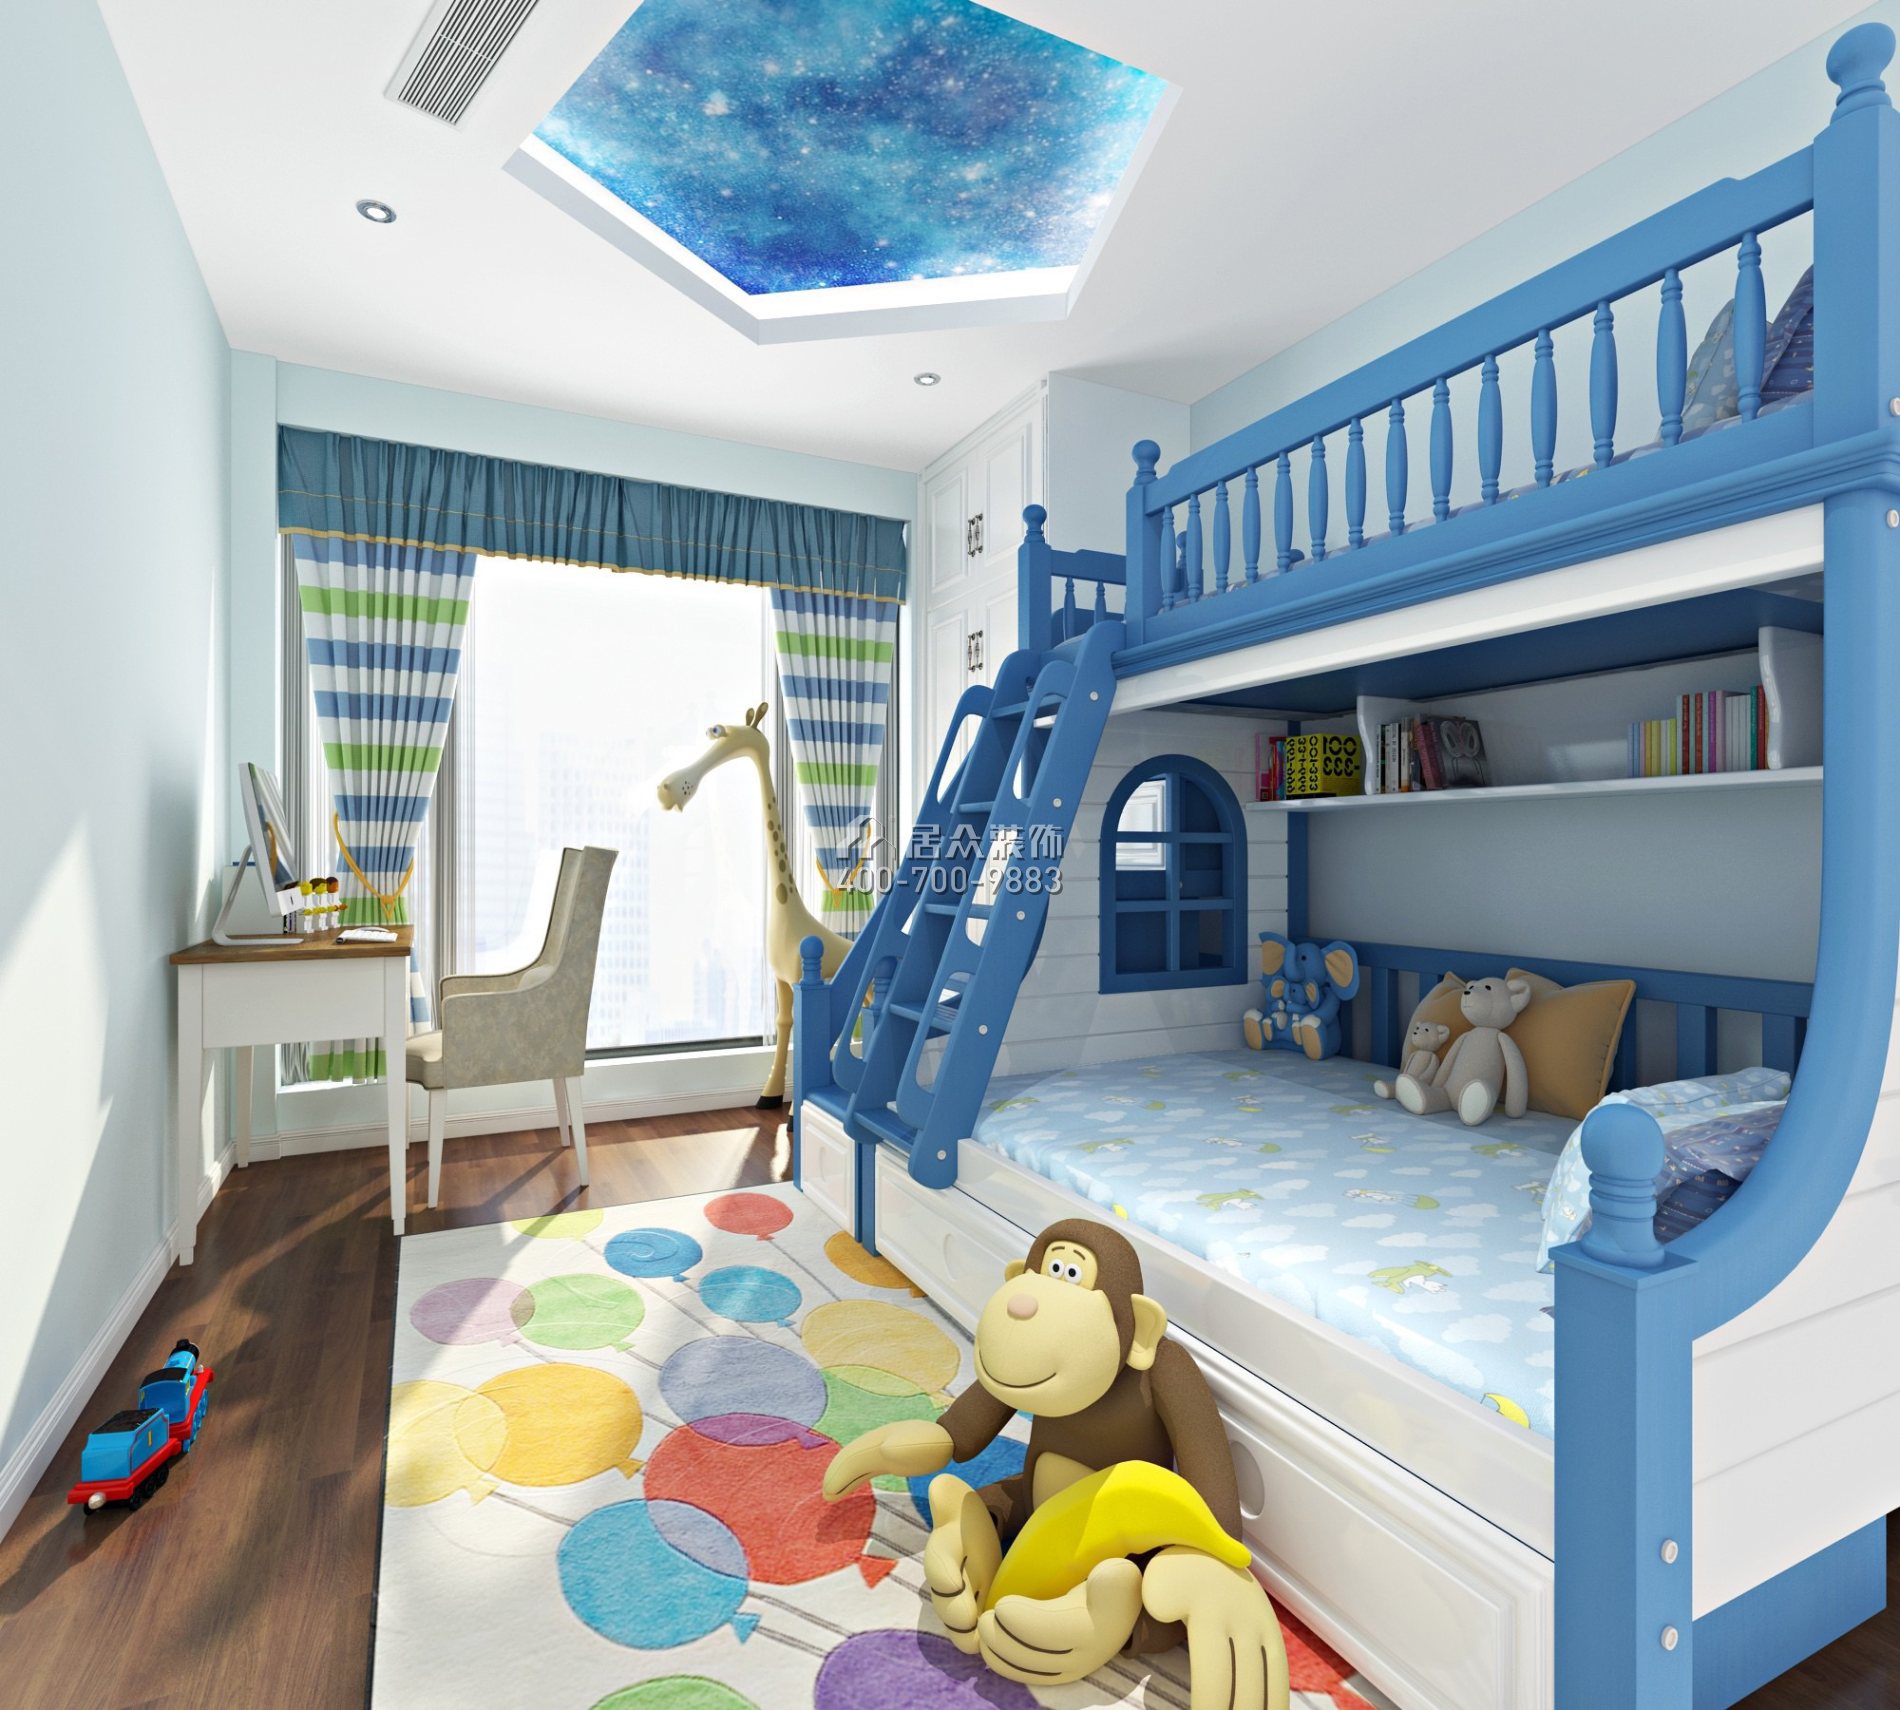 润科华府·御峰123平方米地中海风格平层户型儿童房装修效果图